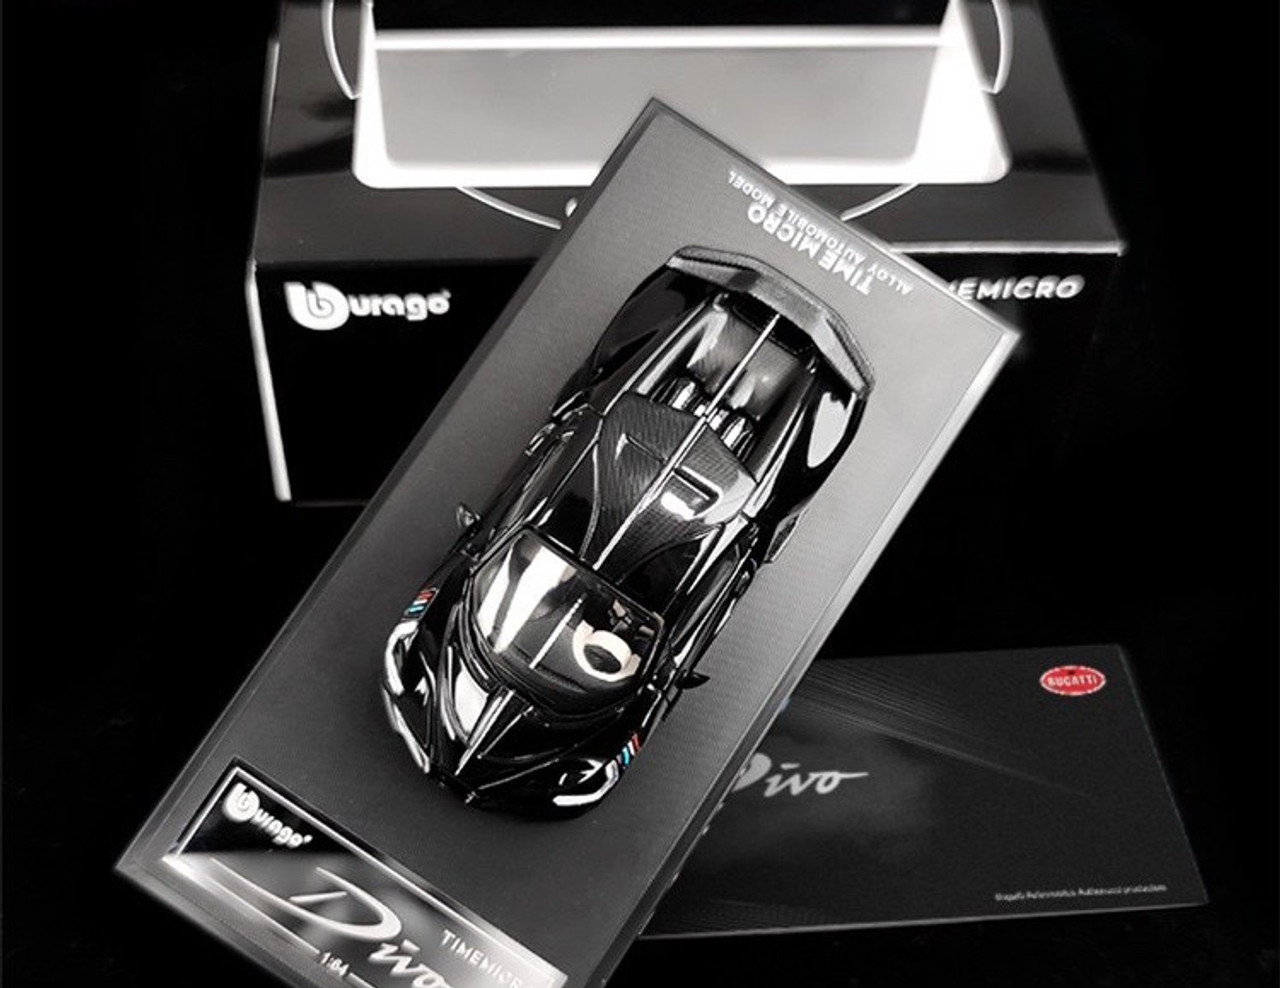 1/64 Time Micro Bugatti Divo (Diamond Black) Diecast Car Model